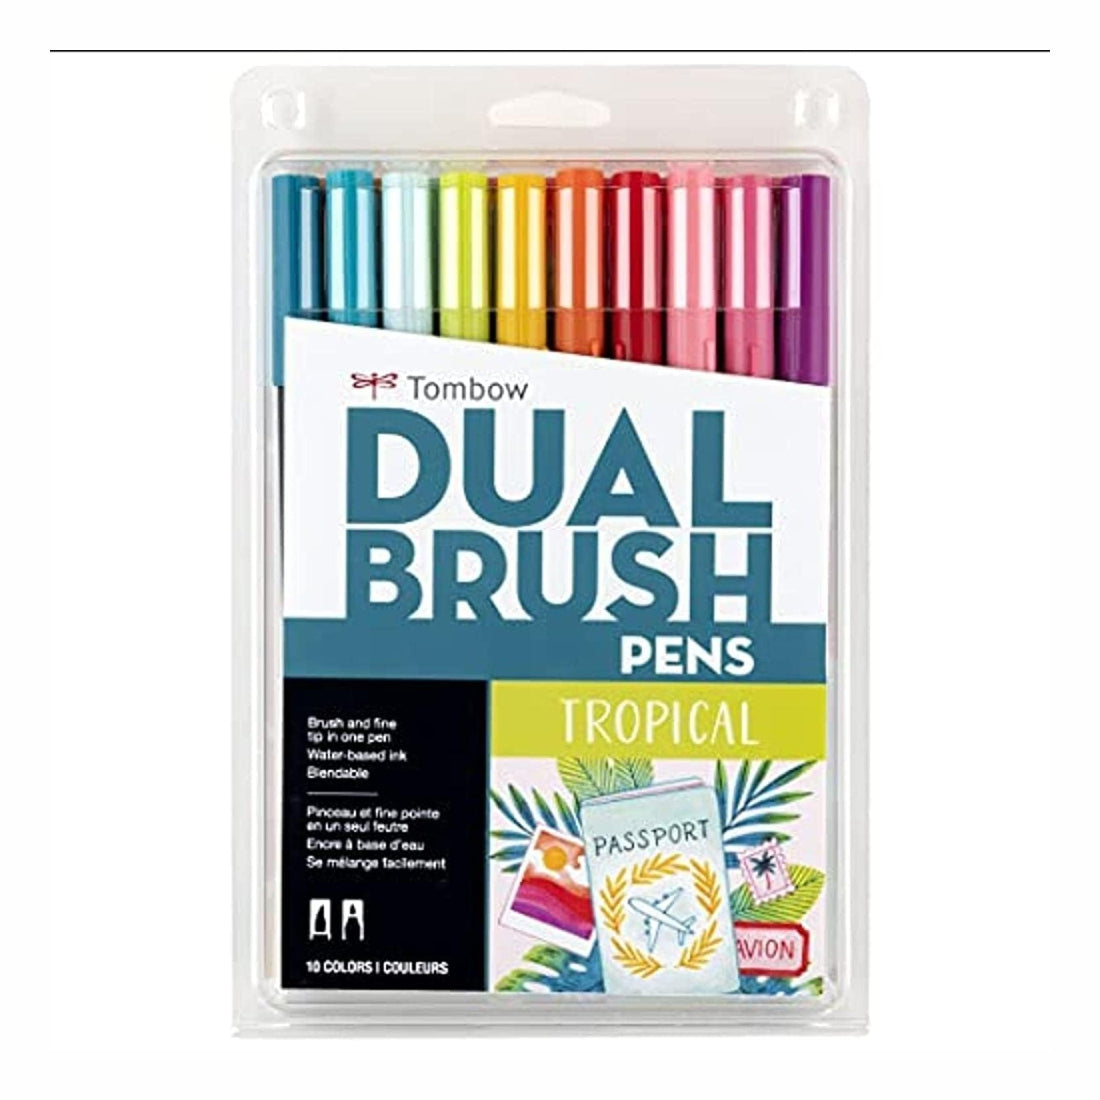 Dual Brush Pens - Set of 10